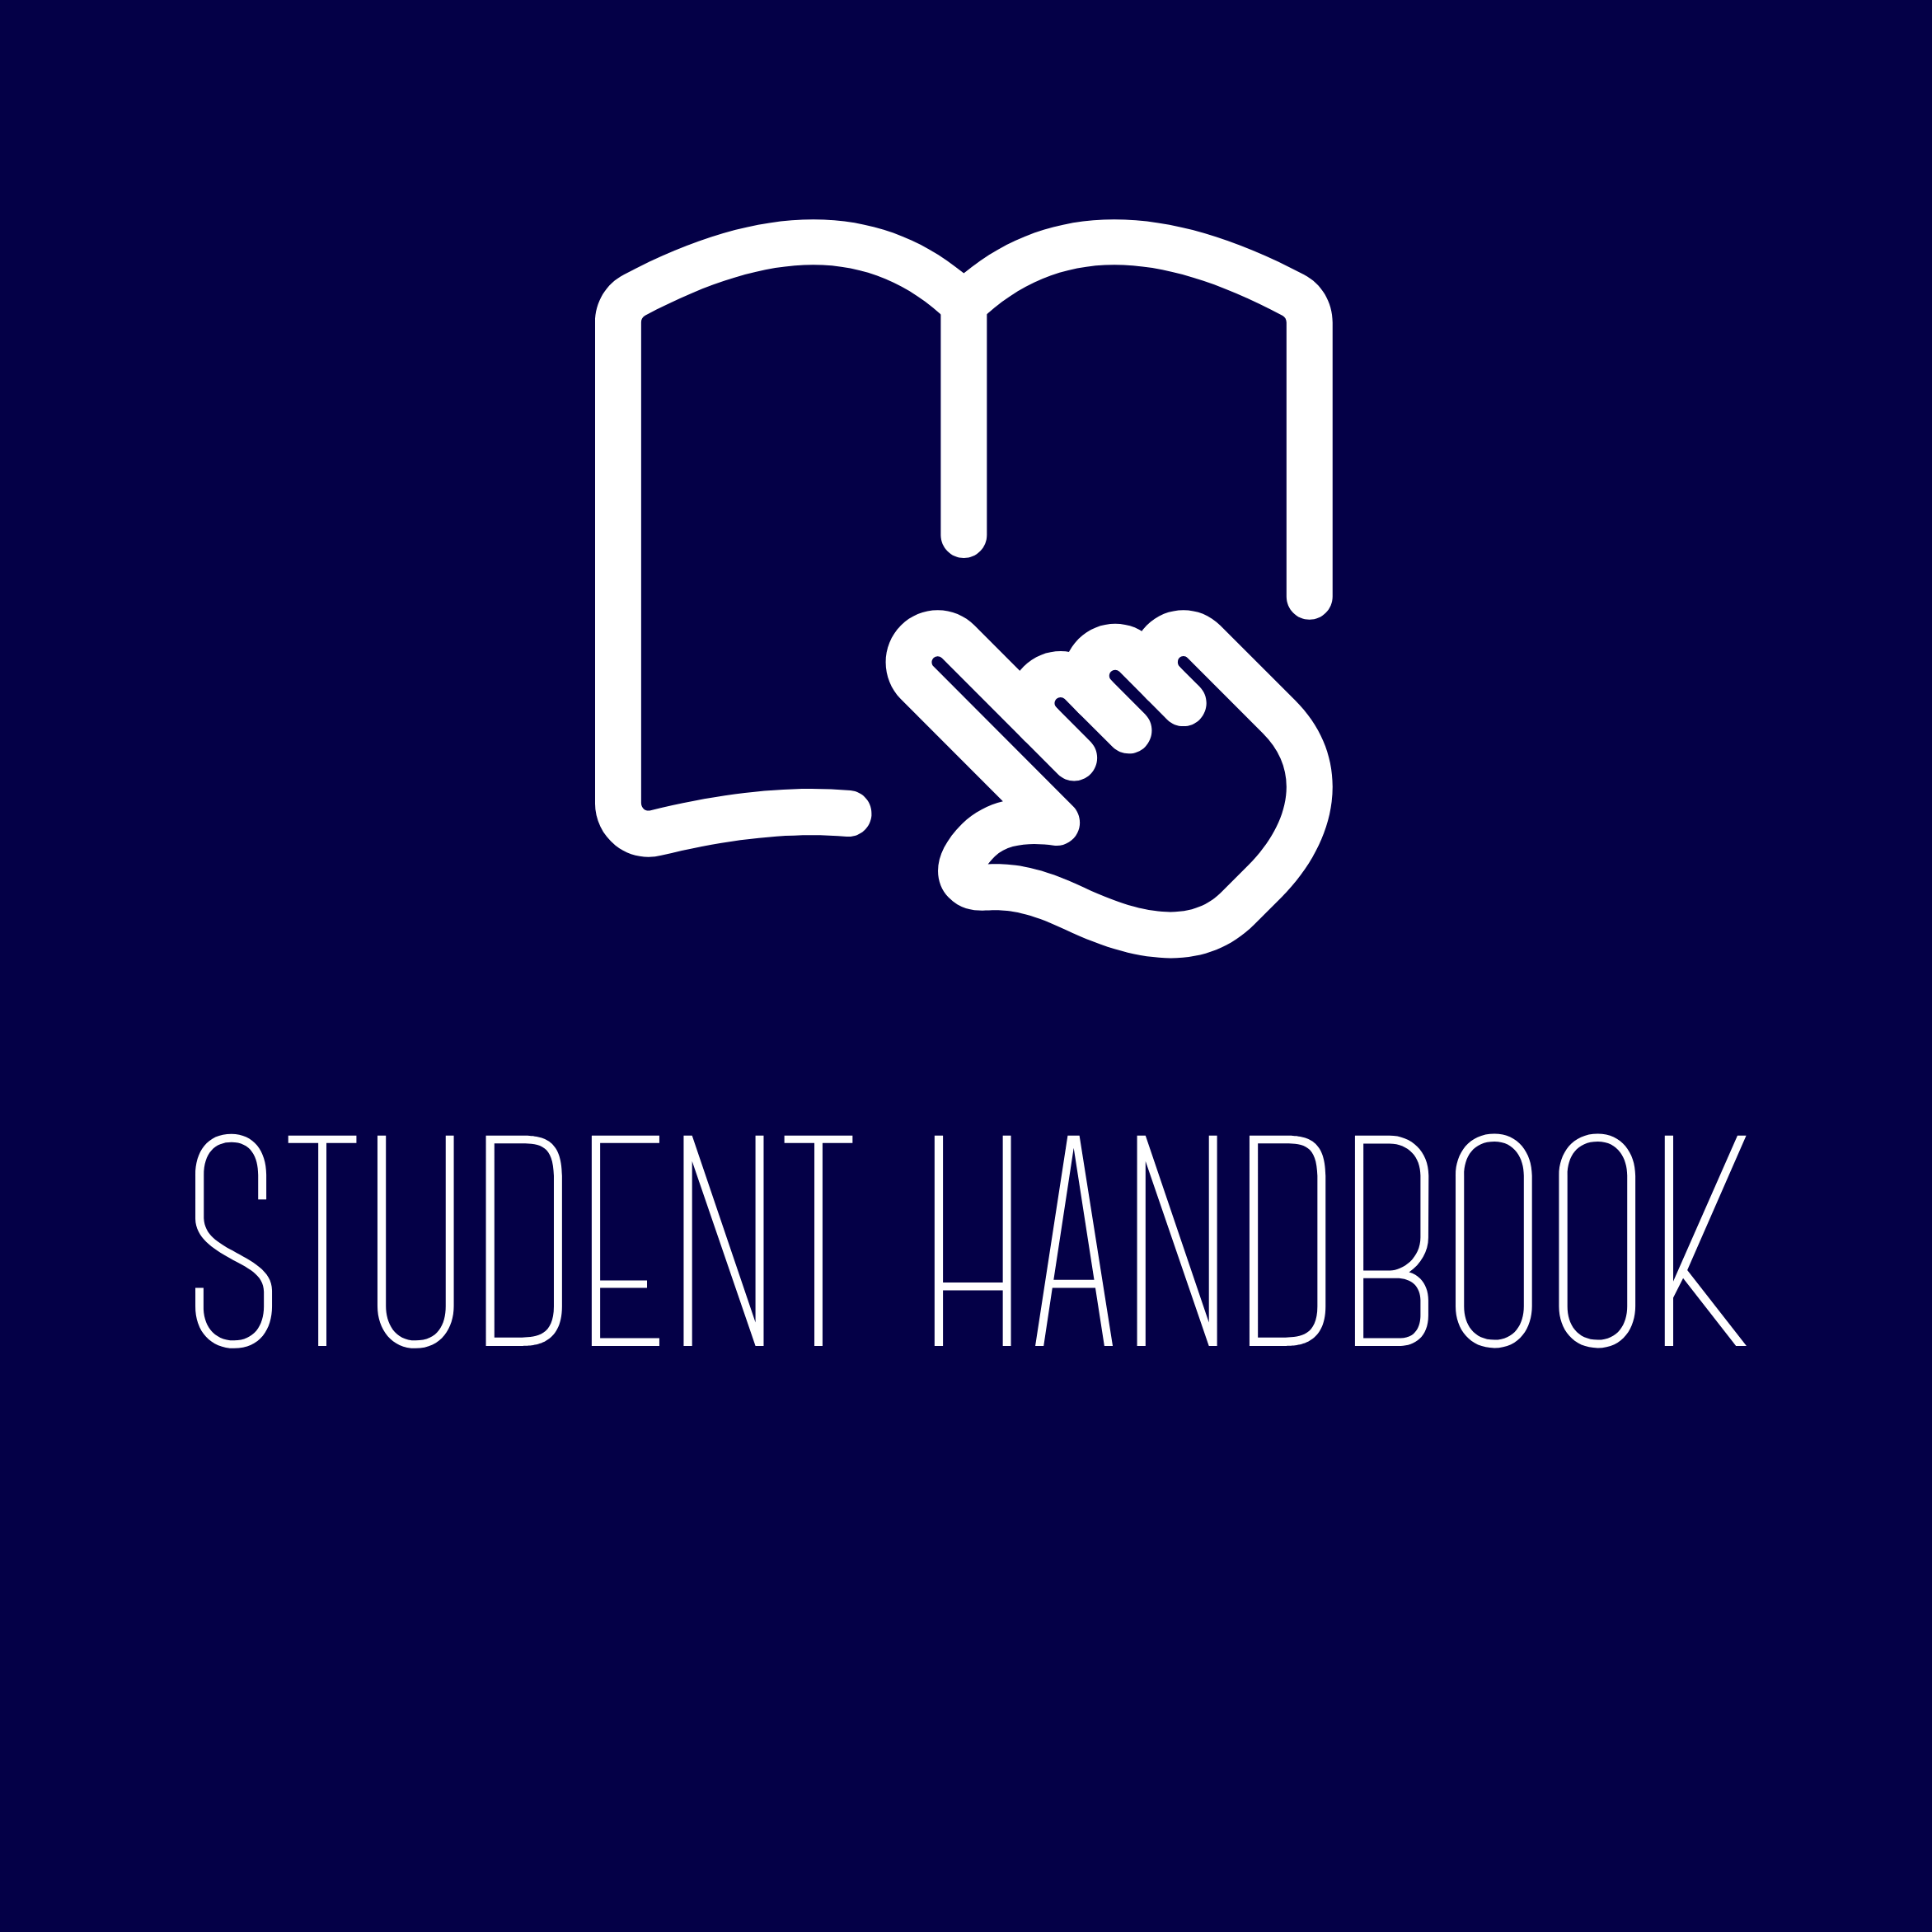 Student Handbook